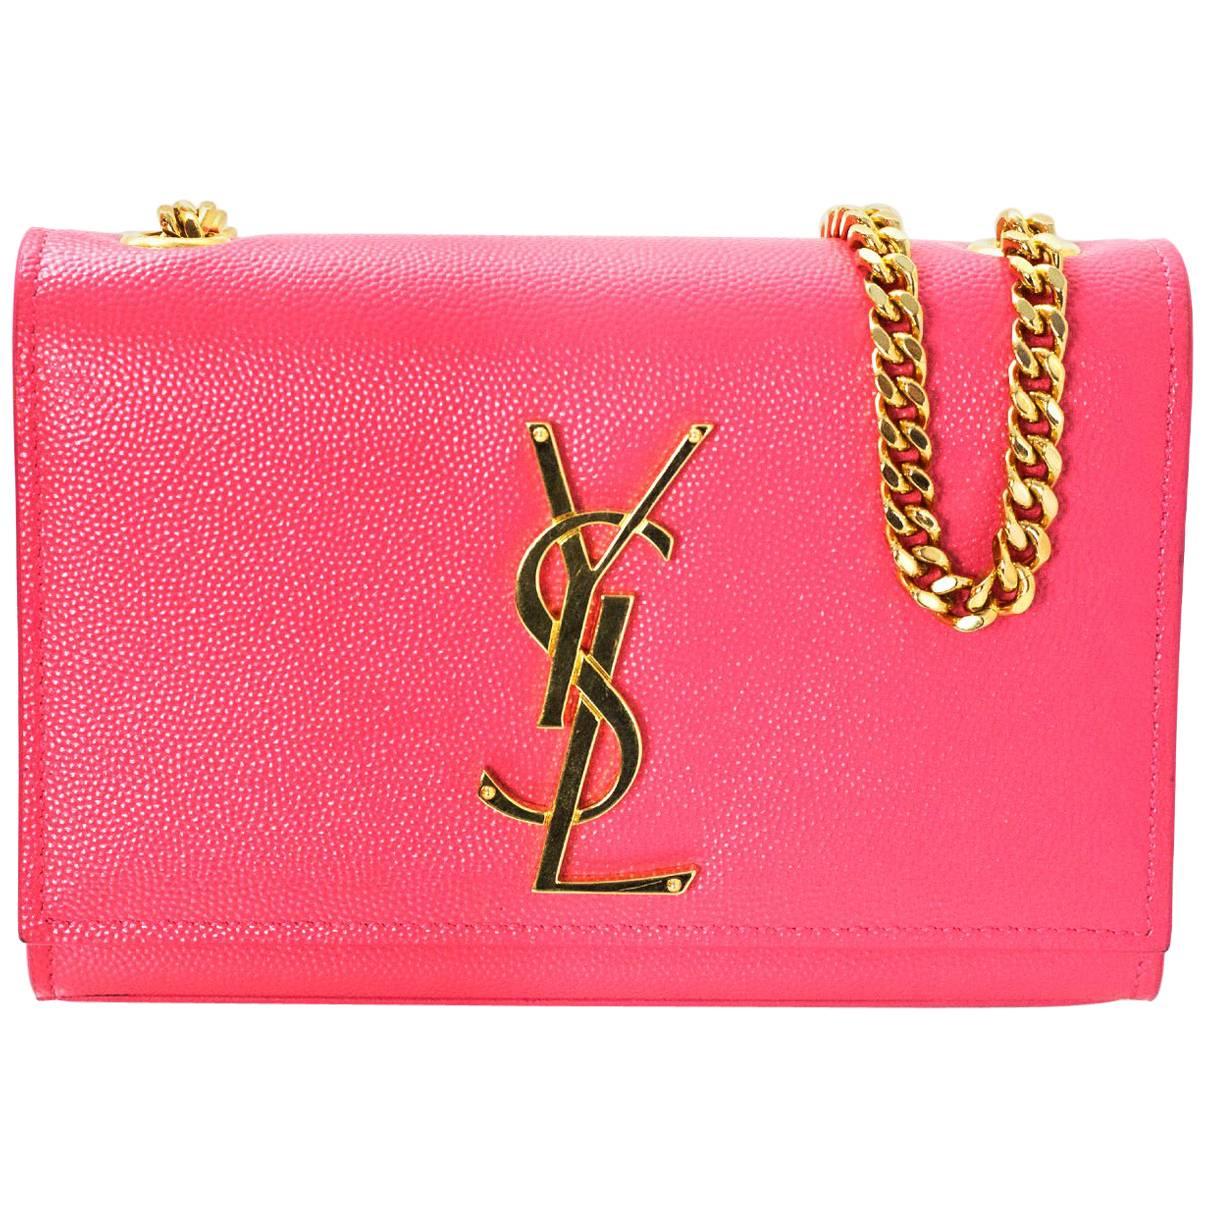 Saint Laurent Pink Grain De Poudre Leather Small Monogram Kate Crossbody Bag